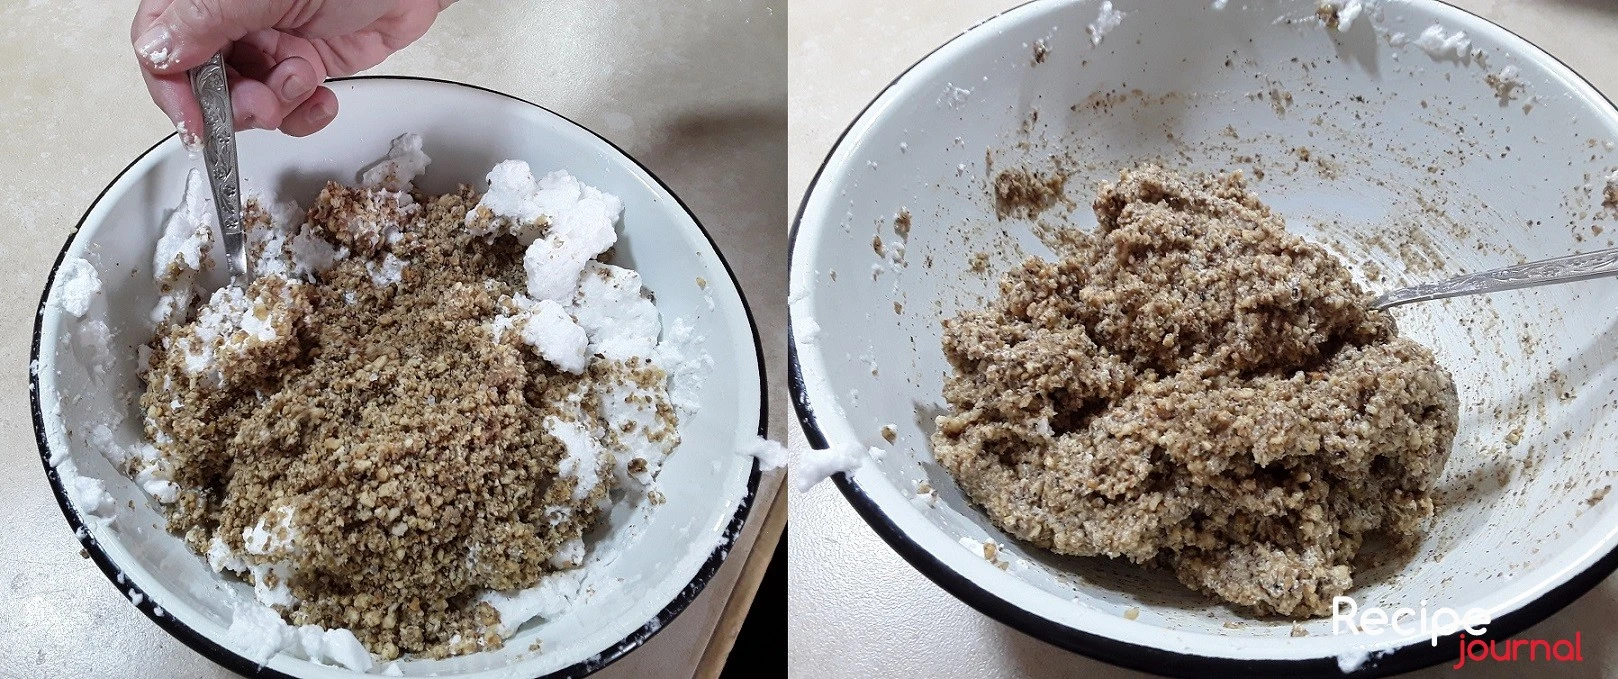 Добавляем оставшуюся соль и перемешиваем аккуратно, чтобы сохранить воздушность белка. В итоге у нас получится вот такая однородная и достаточно липкая ореховая масса.